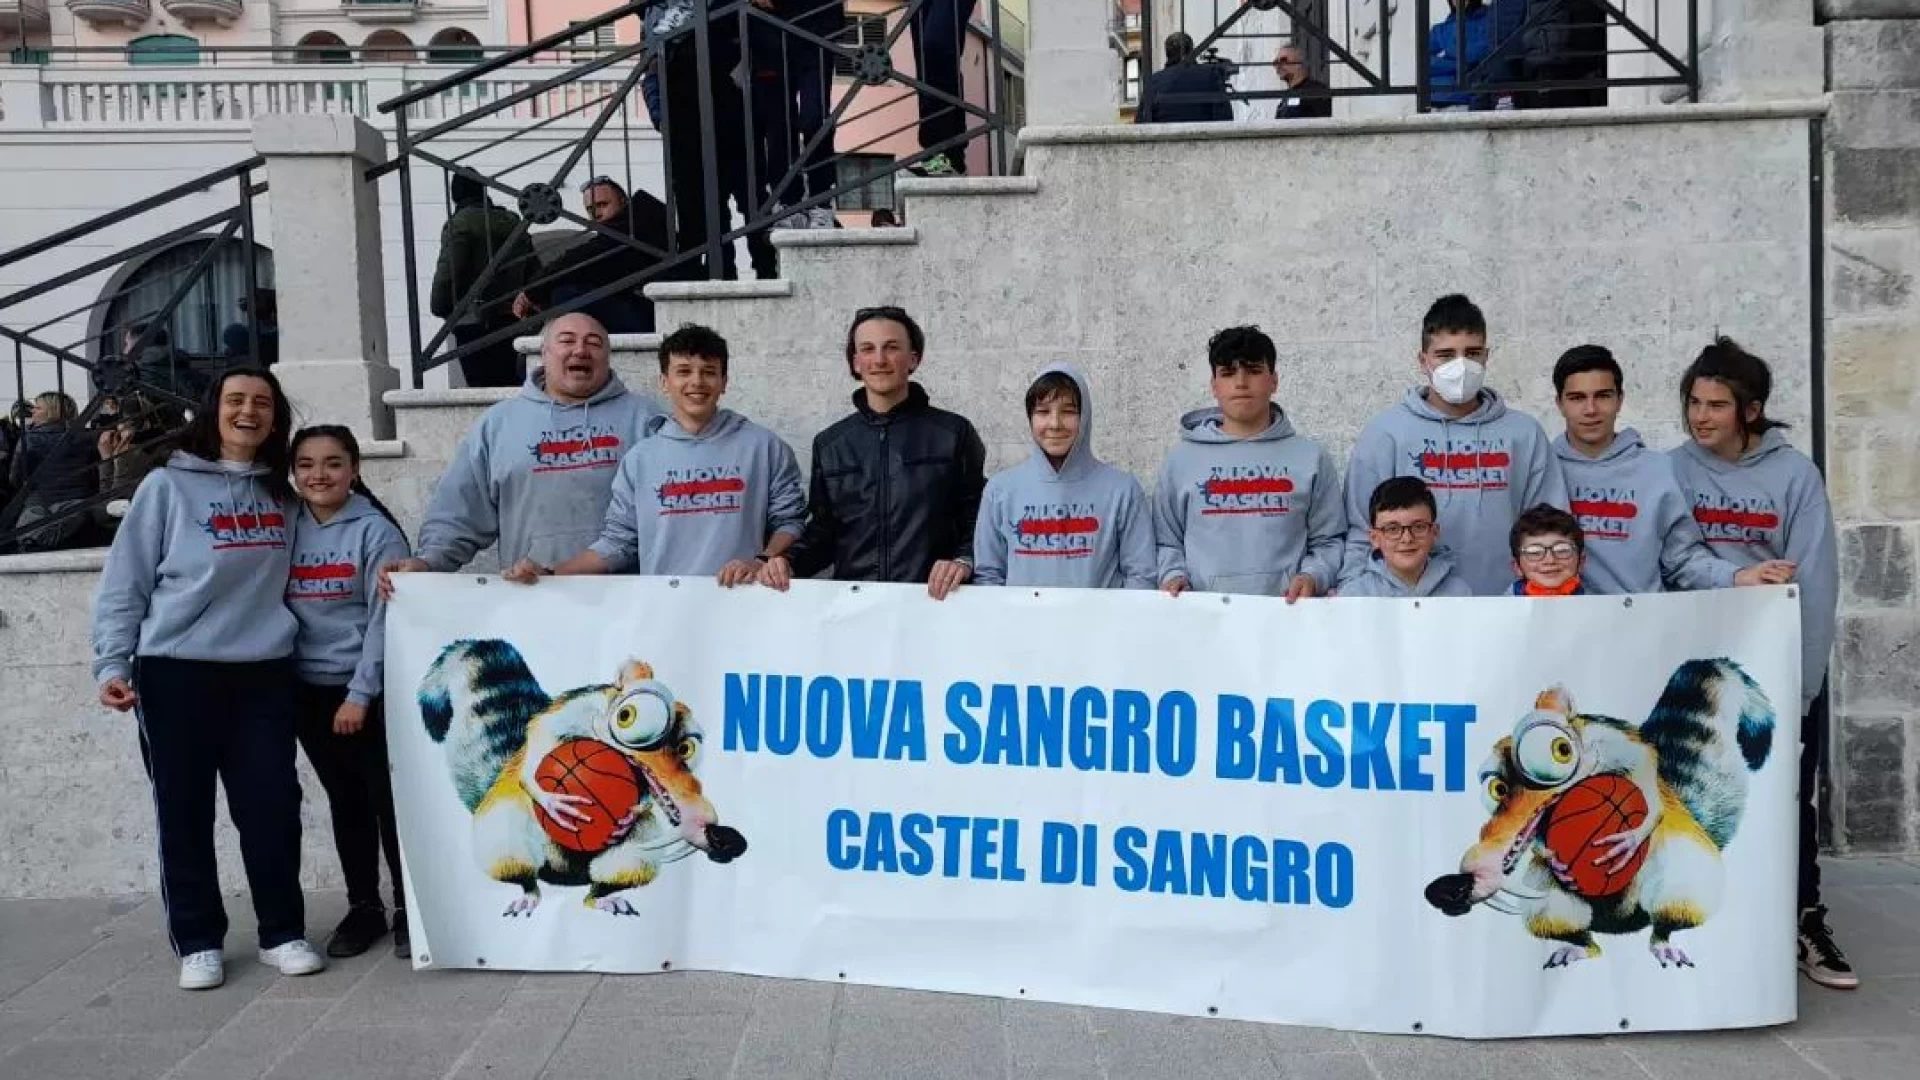 La Nuova Sangro Basket raddoppia. L’associazione sportiva avvia i nuovi corsi di minibasket gratuiti.